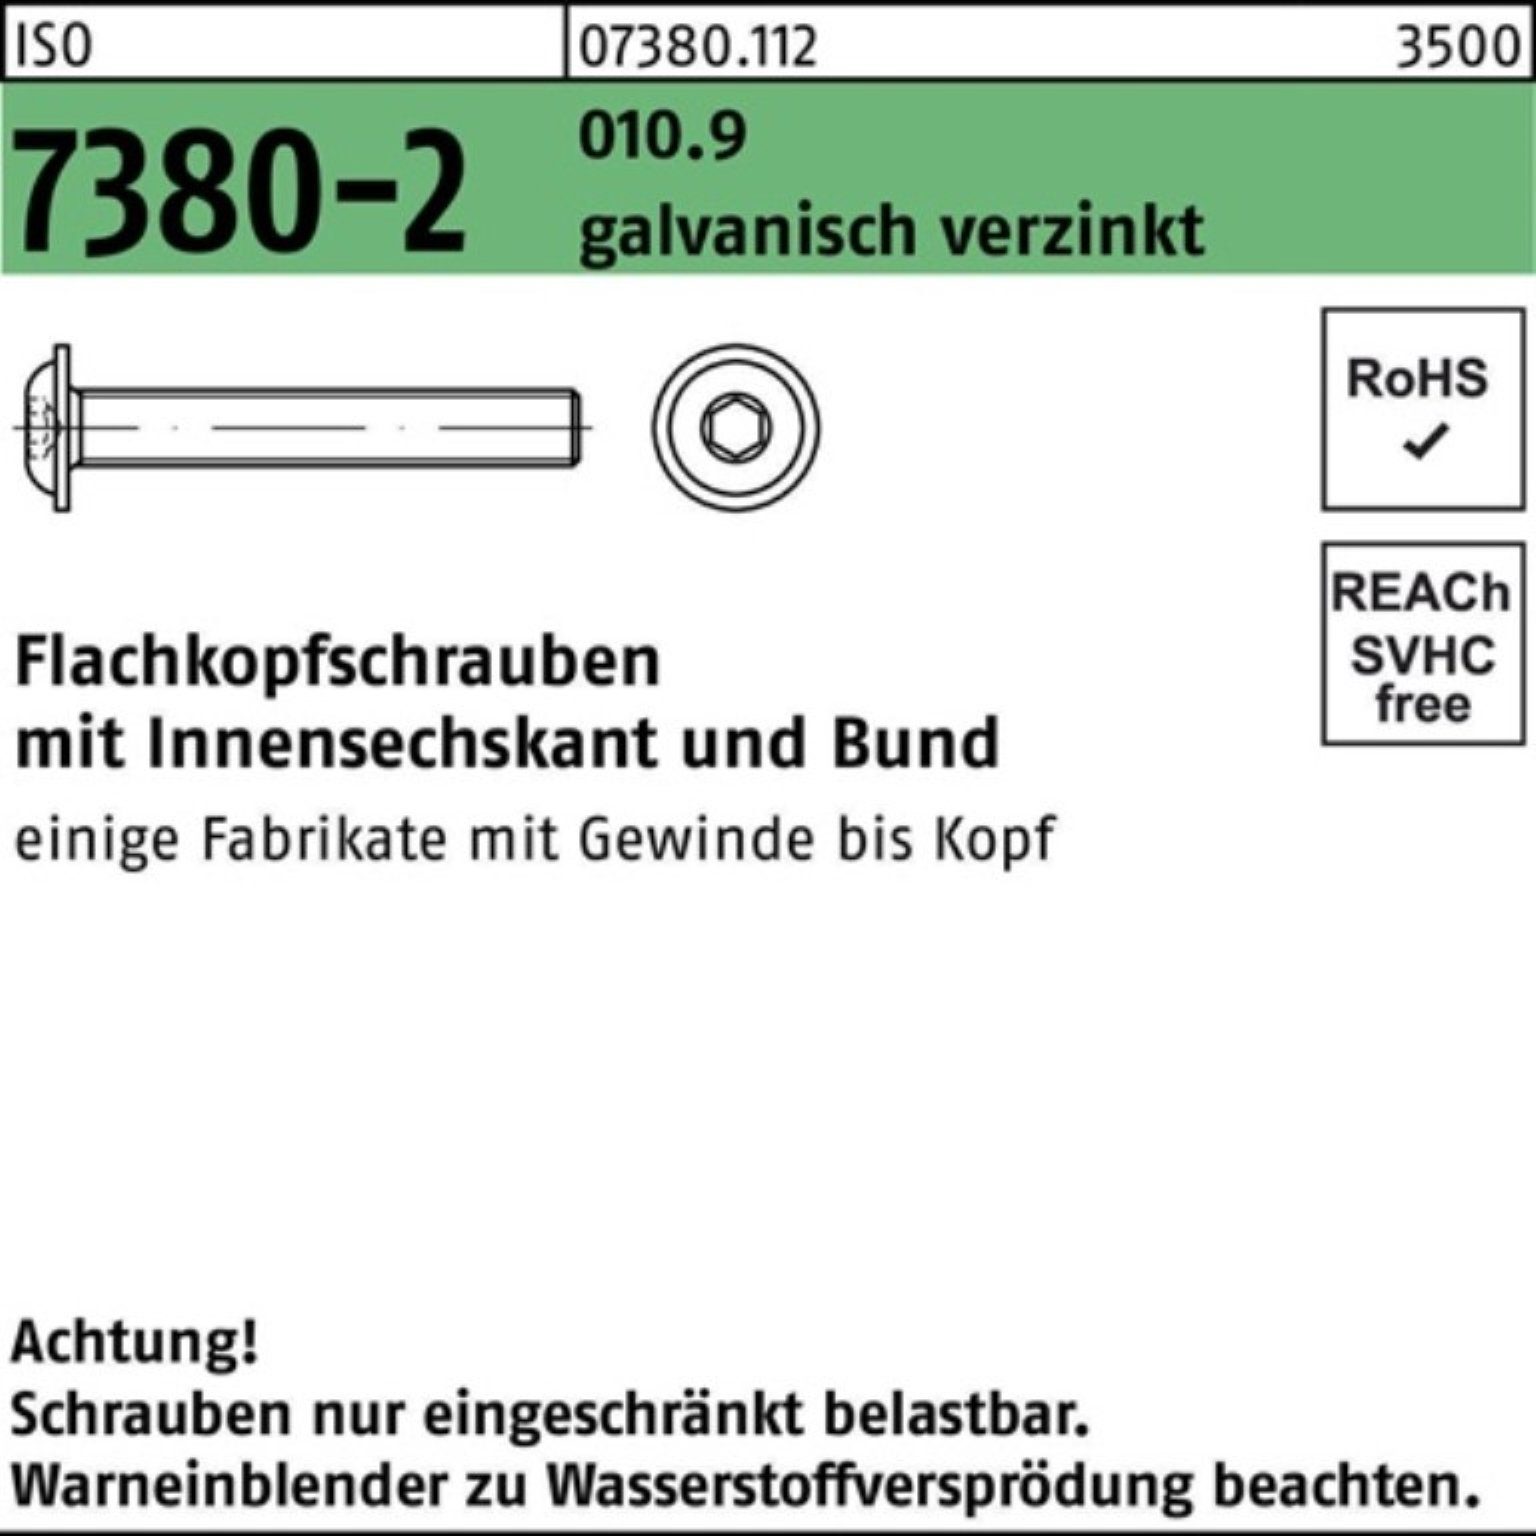 Flachkopfschraube Reyher 010.9 Bund/Innen-6kt ISO 200er 7380-2 ga Pack Schraube M10x20